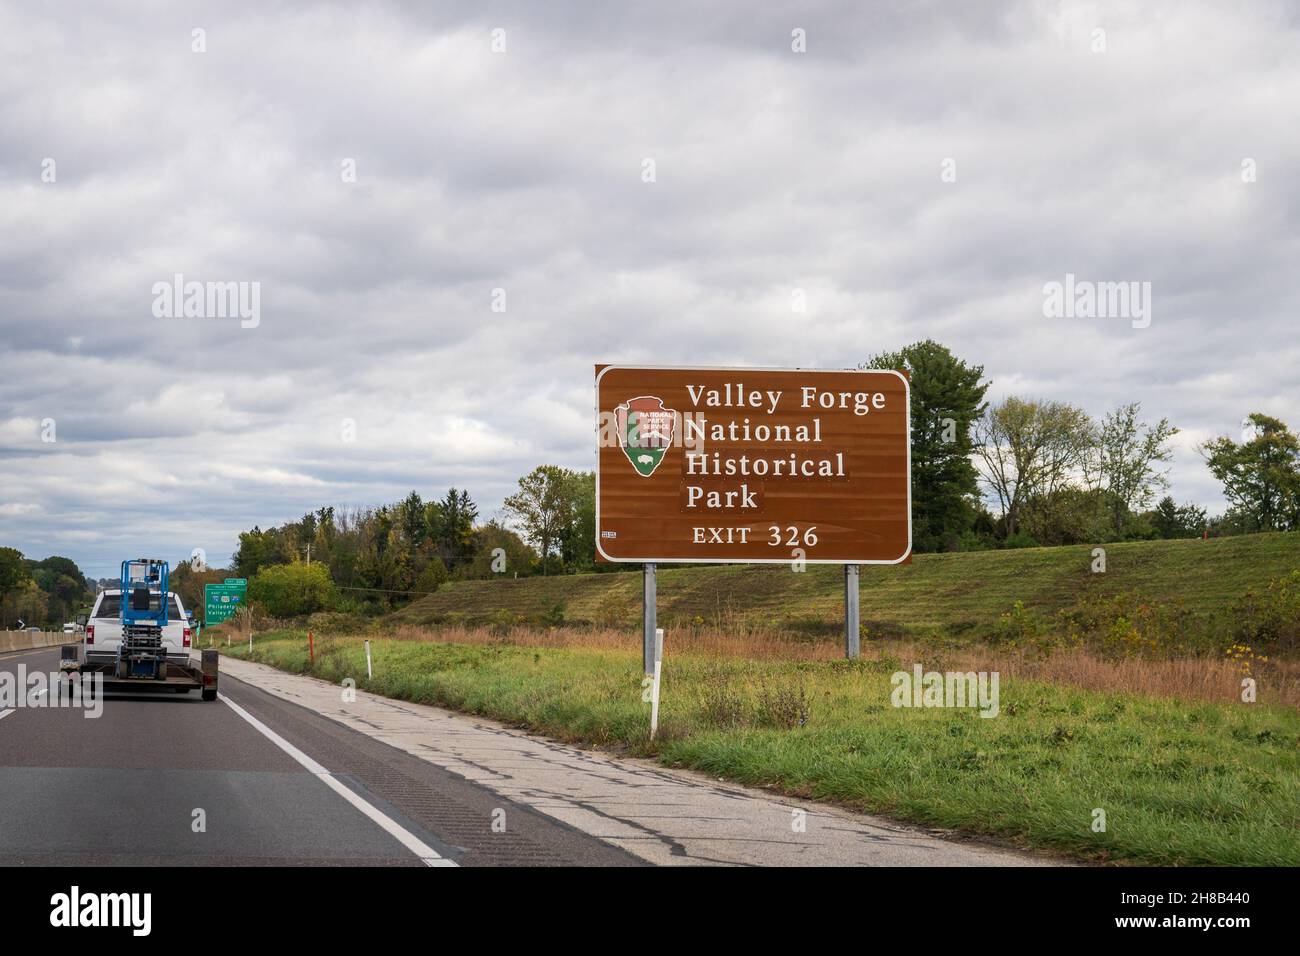 Wayne, PA - 27 octobre 2021 : le panneau sur l'autoroute à péage de Pennsylvanie indique la sortie pour le parc historique national de Valley Forge. Banque D'Images